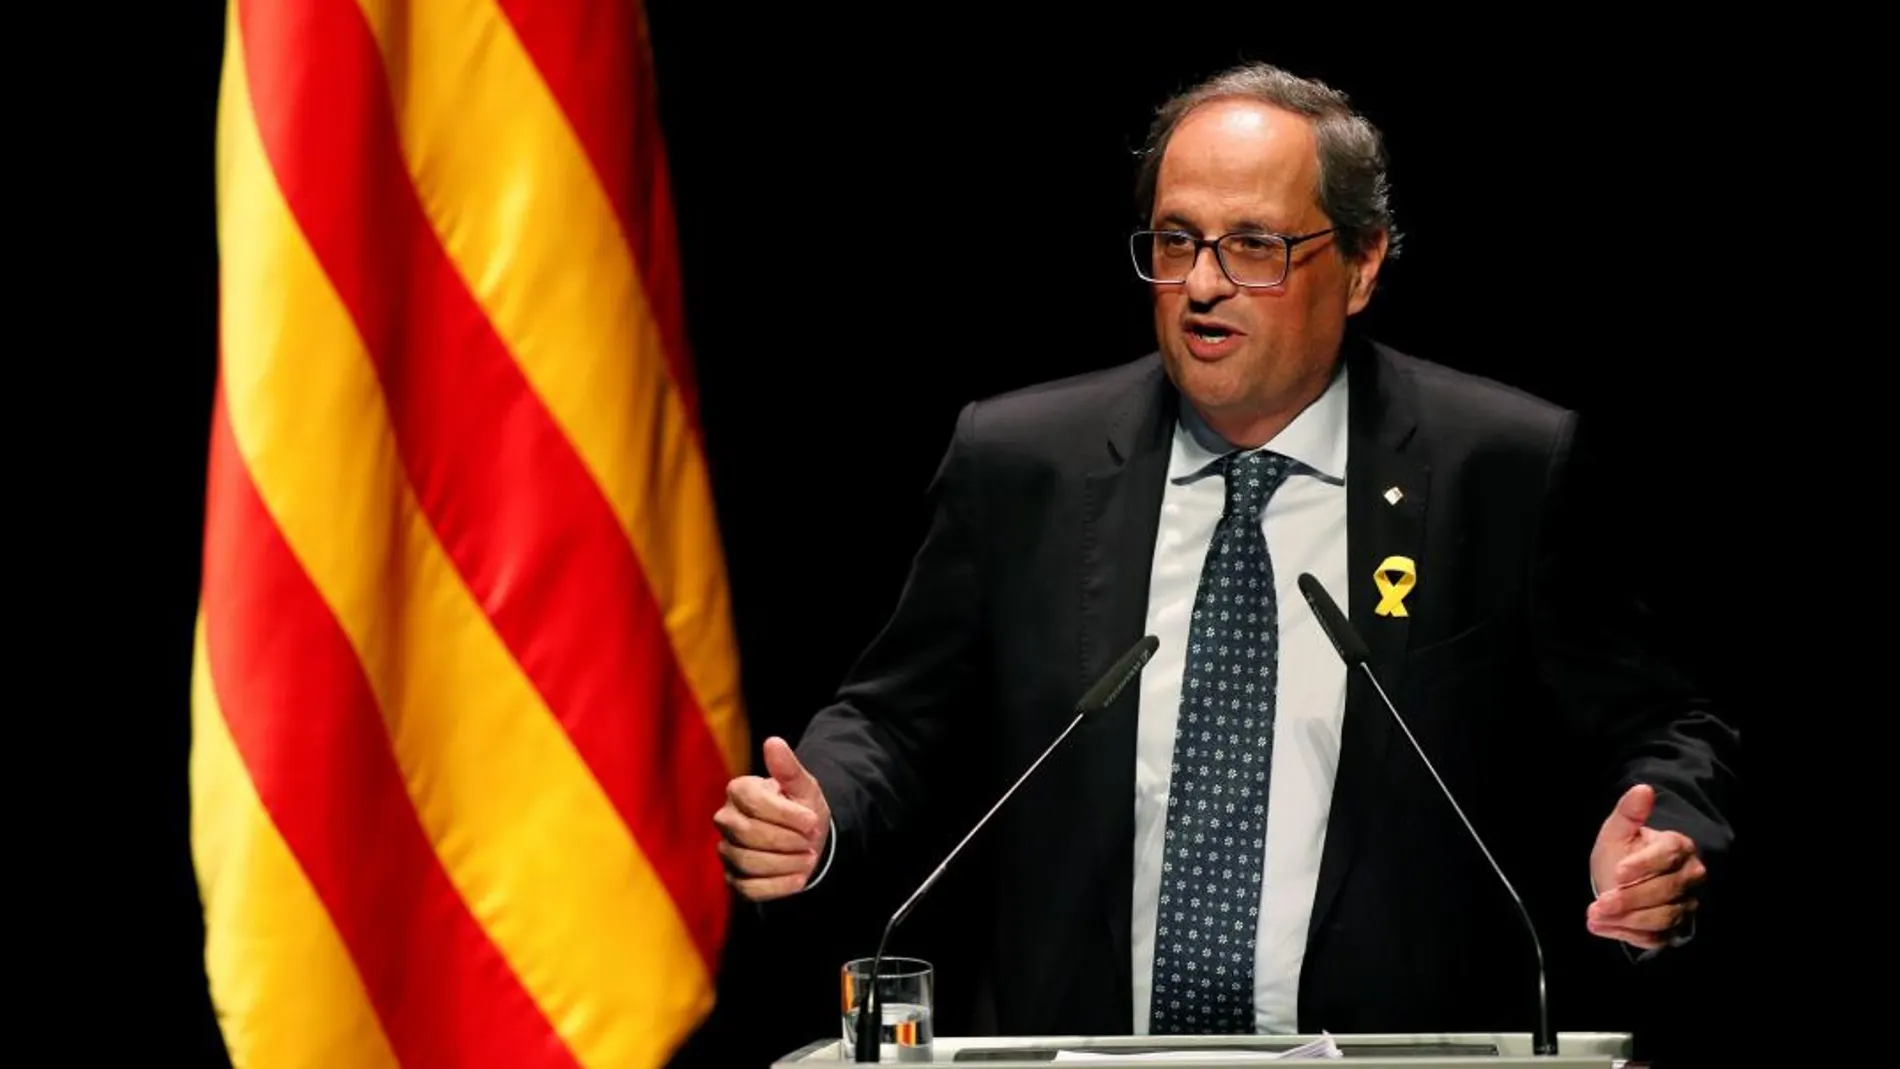 El presidente de la Generalitat, Quim Torra, pronuncia la conferencia con el título "Nuestro momento” hoy en el Teatro Nacional de Cataluña, en Barcelona. EFE/ Alejandro García